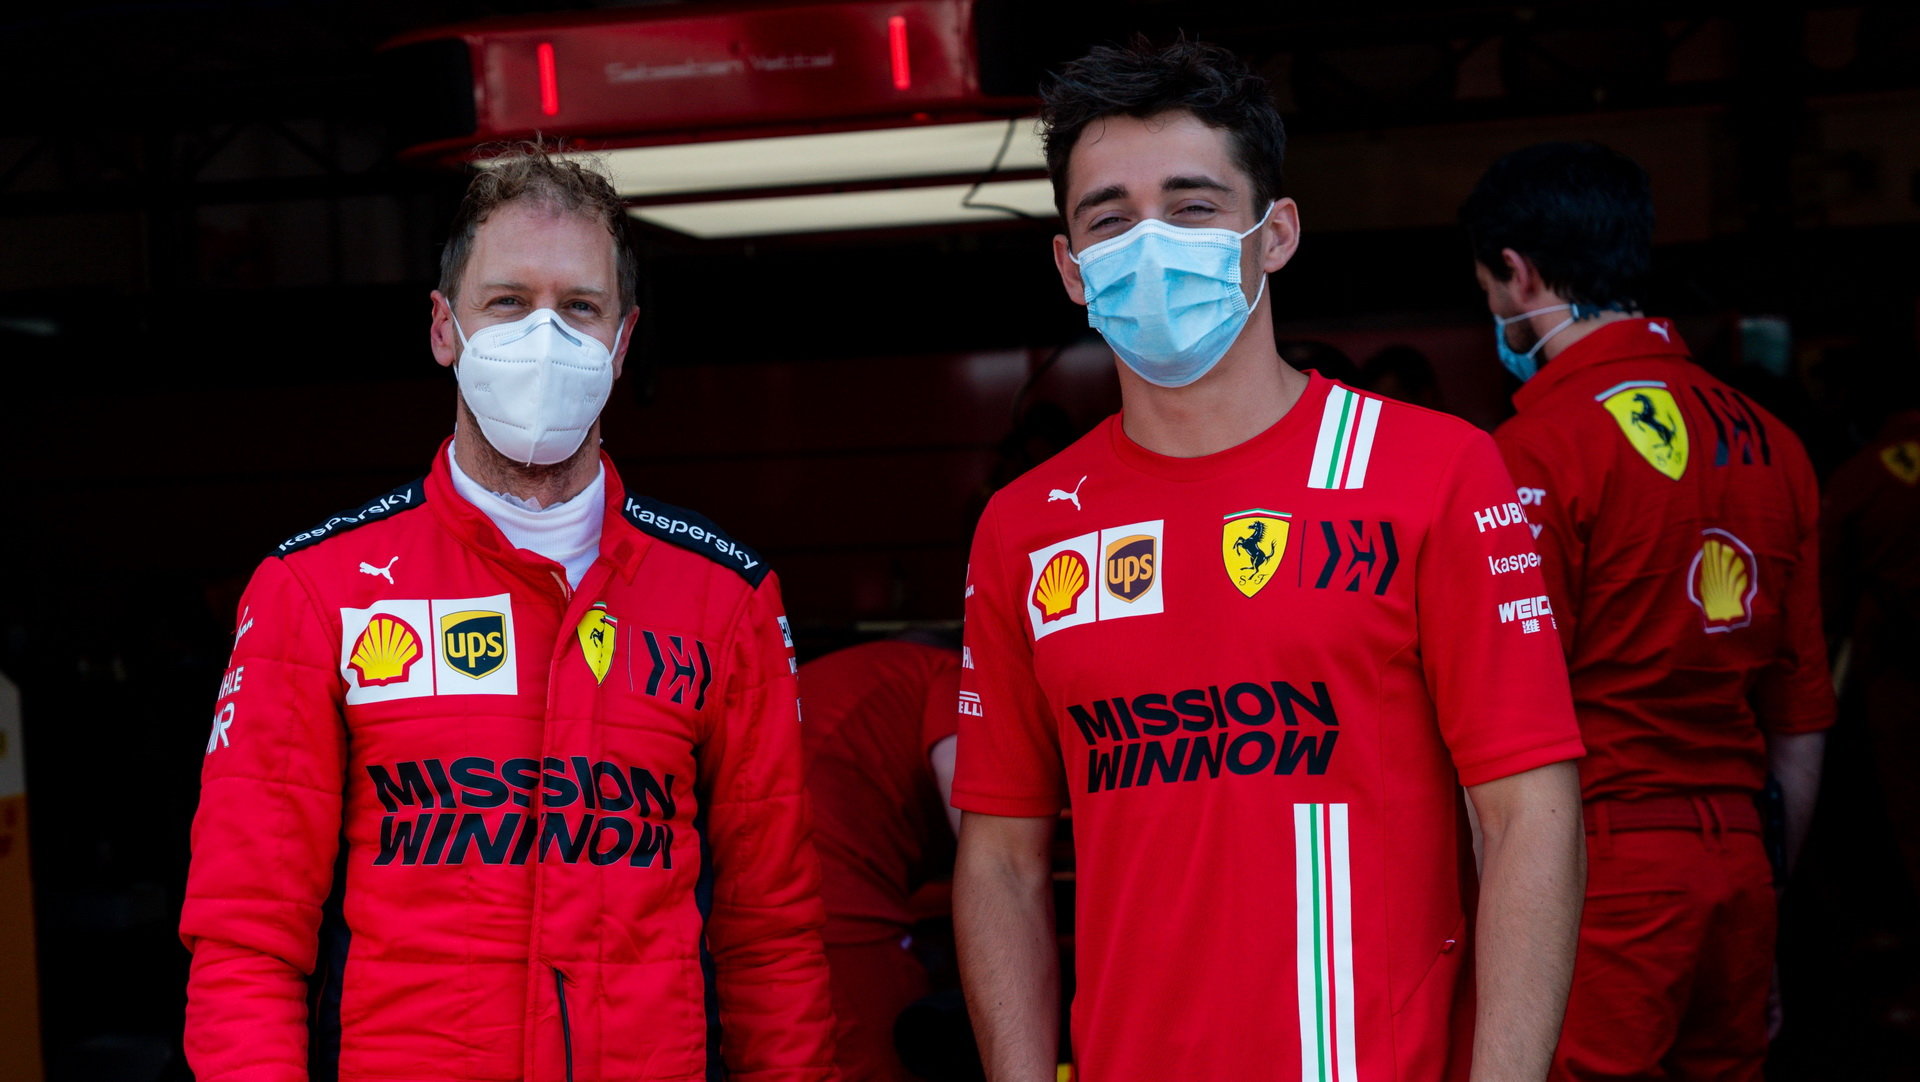 Sebastiana Vettela (vlevo) od příštího roku nahradí Carlos Sainz, společně s Charlesem Leclercem vytvoří novou dvojici, která by se měla dočkat vítězného cyklu